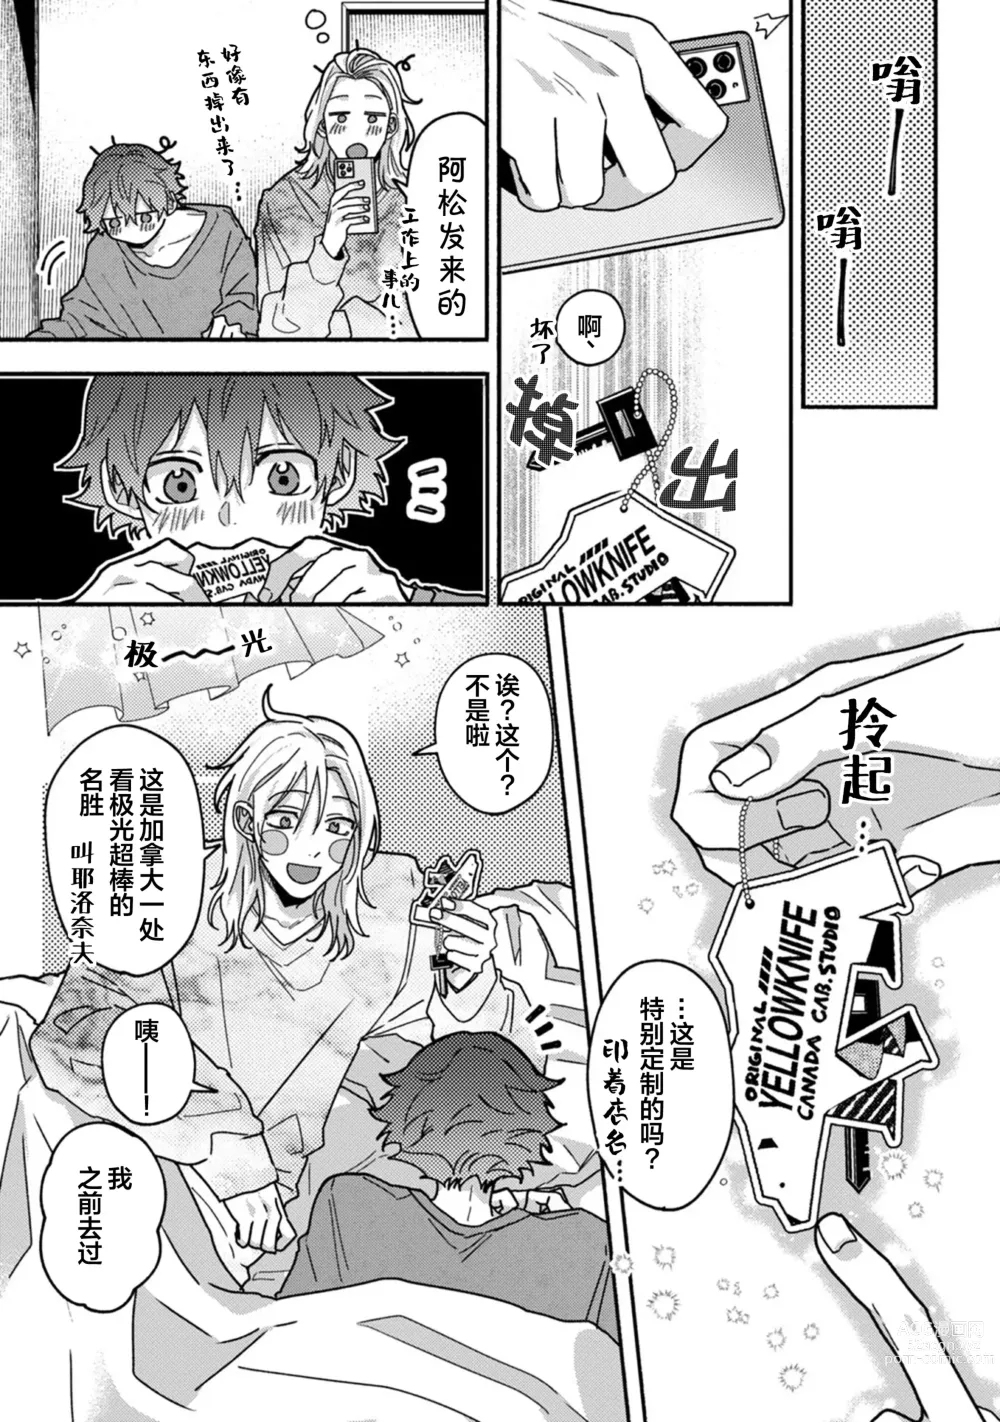 Page 176 of manga 谎言与黄色小刀